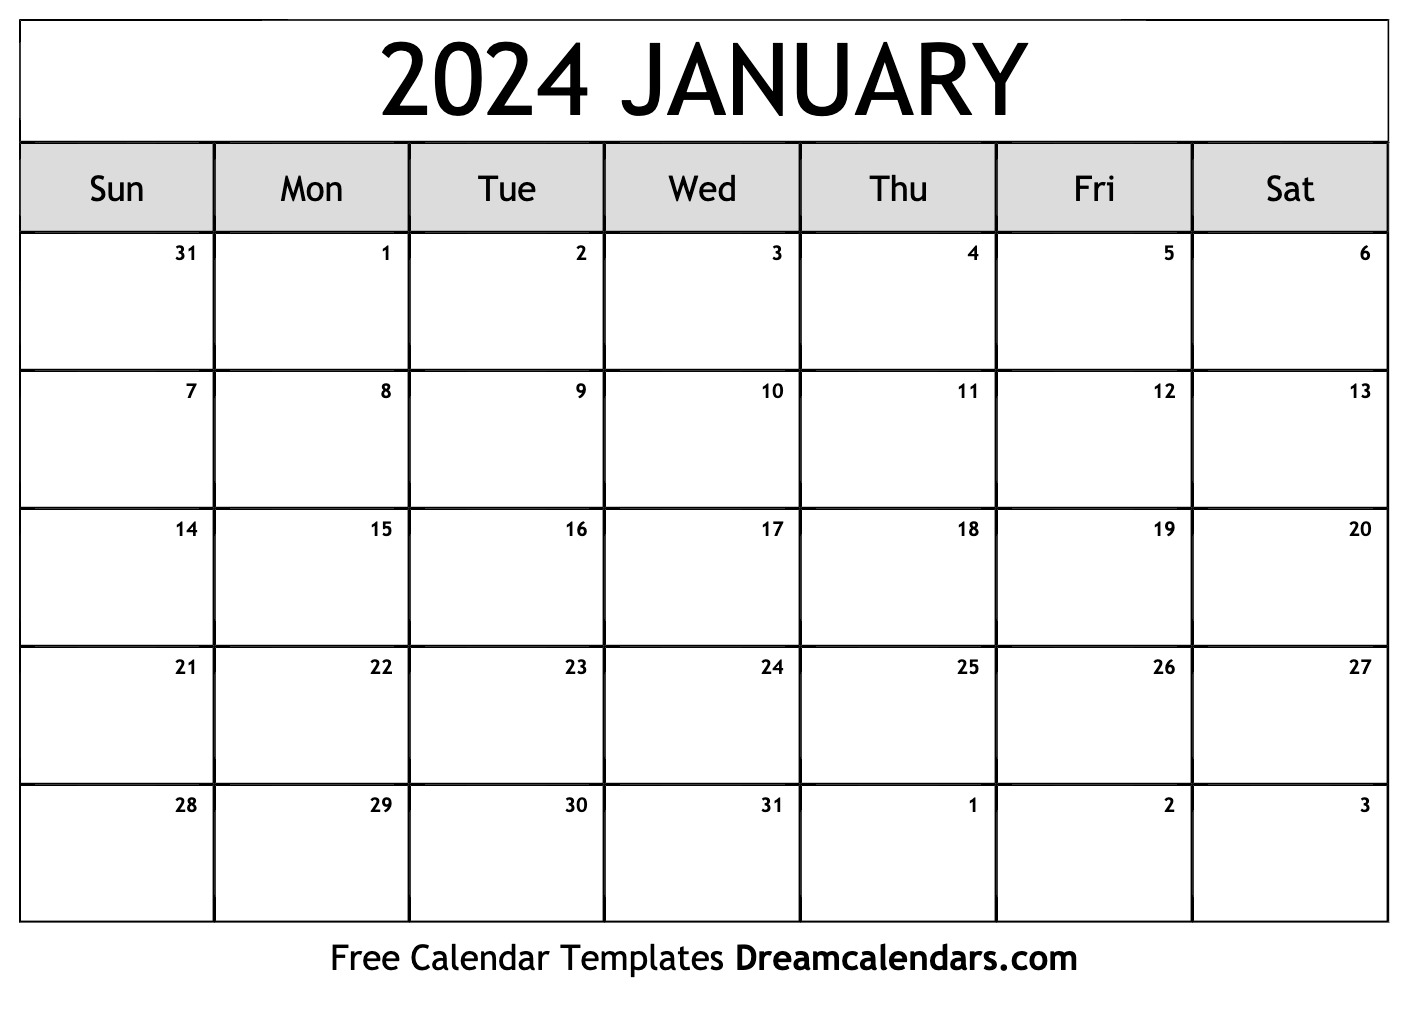 2024 Calendar Printable Free January 22 Dec 2024 Calendar With Holidays